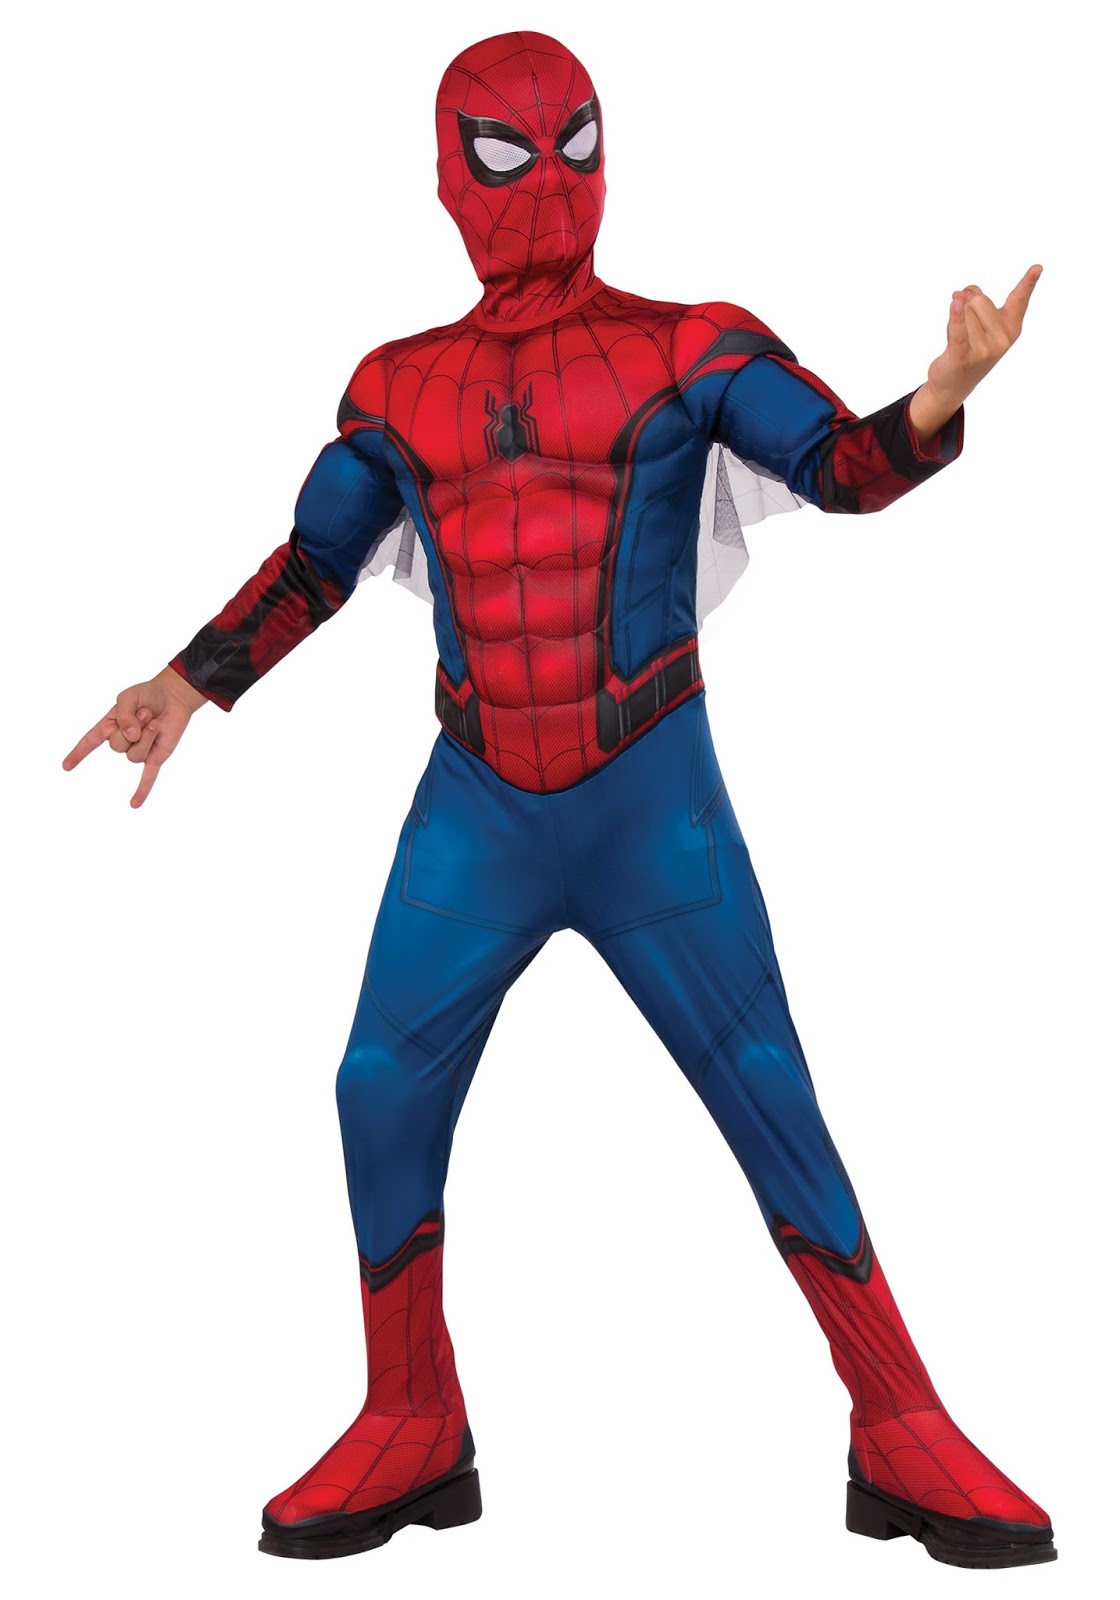 Spider-man influence: Spiderman Kids Costume